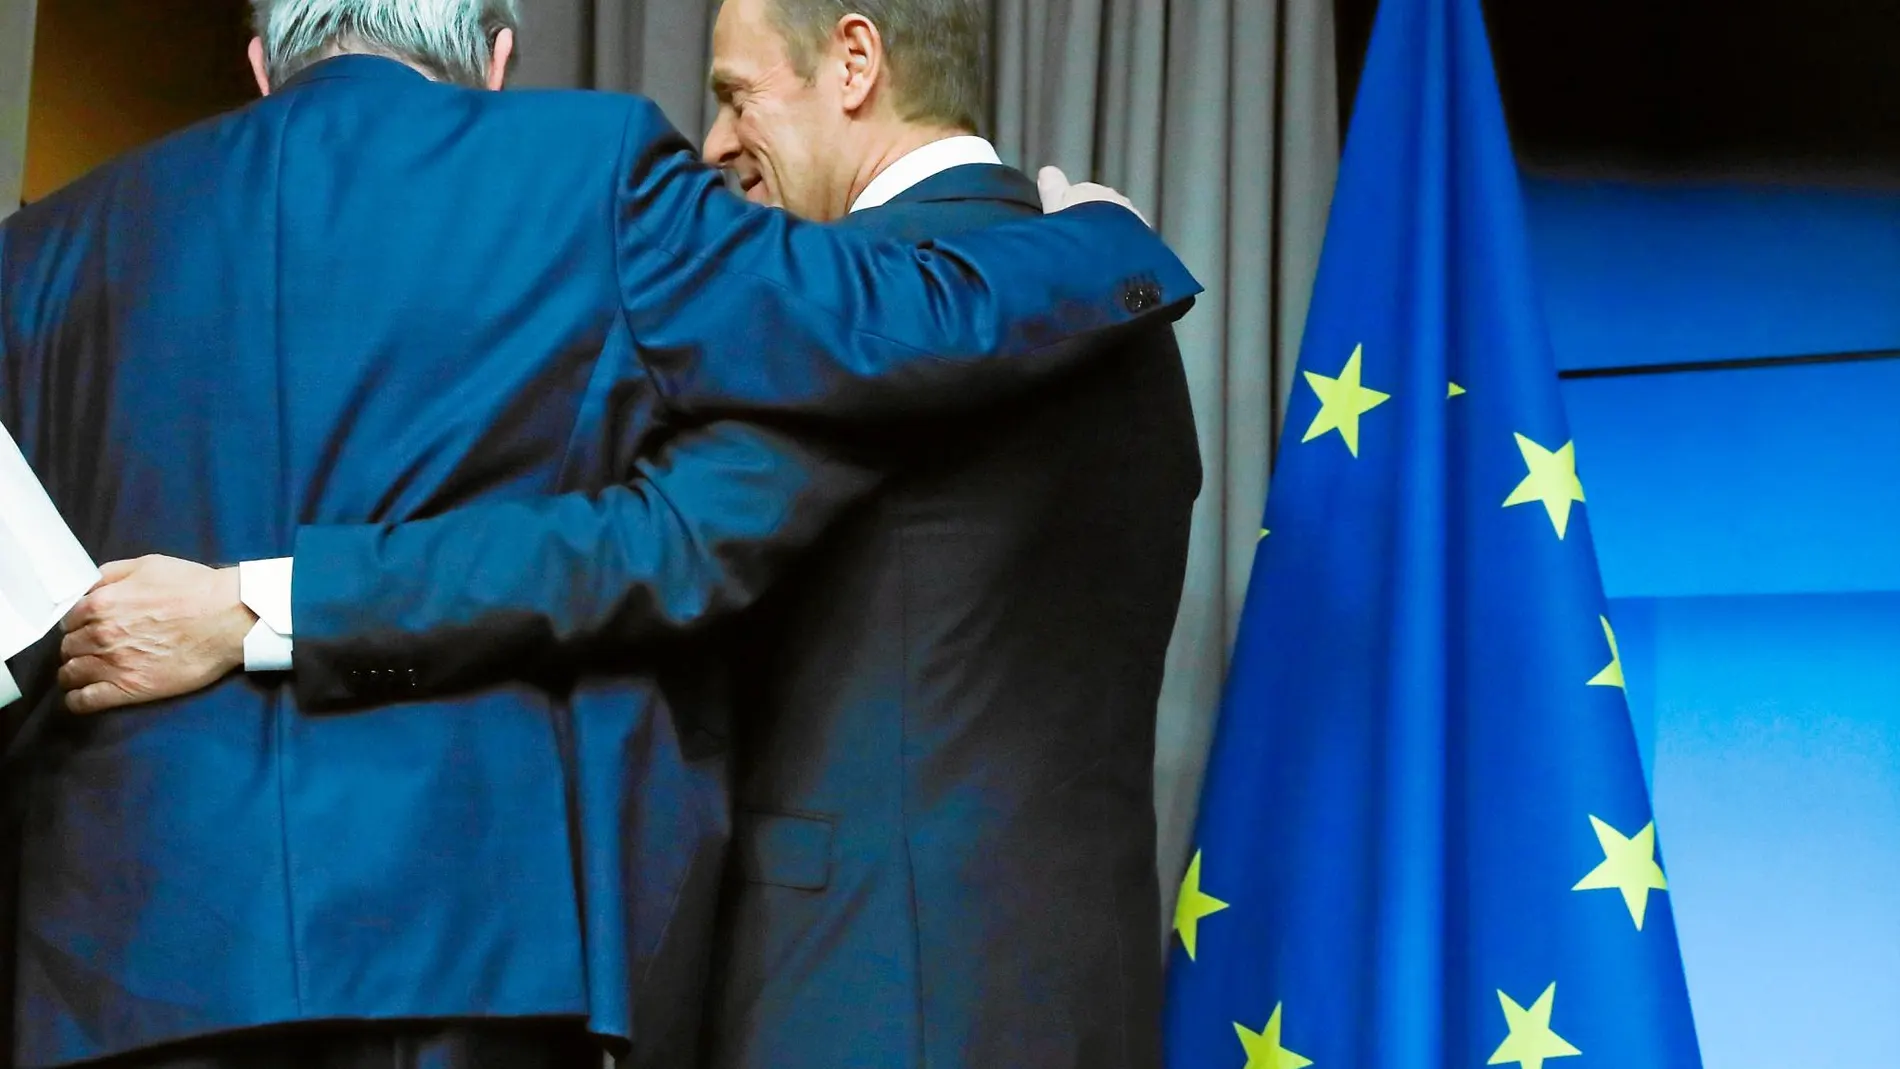 «El Brexit en vuestras manos». Tusk, en la imagen junto a Juncker, apeló ayer a la clase política británica y aseguró que está en sus manos cómo termine el proceso de divorcio / Reuters